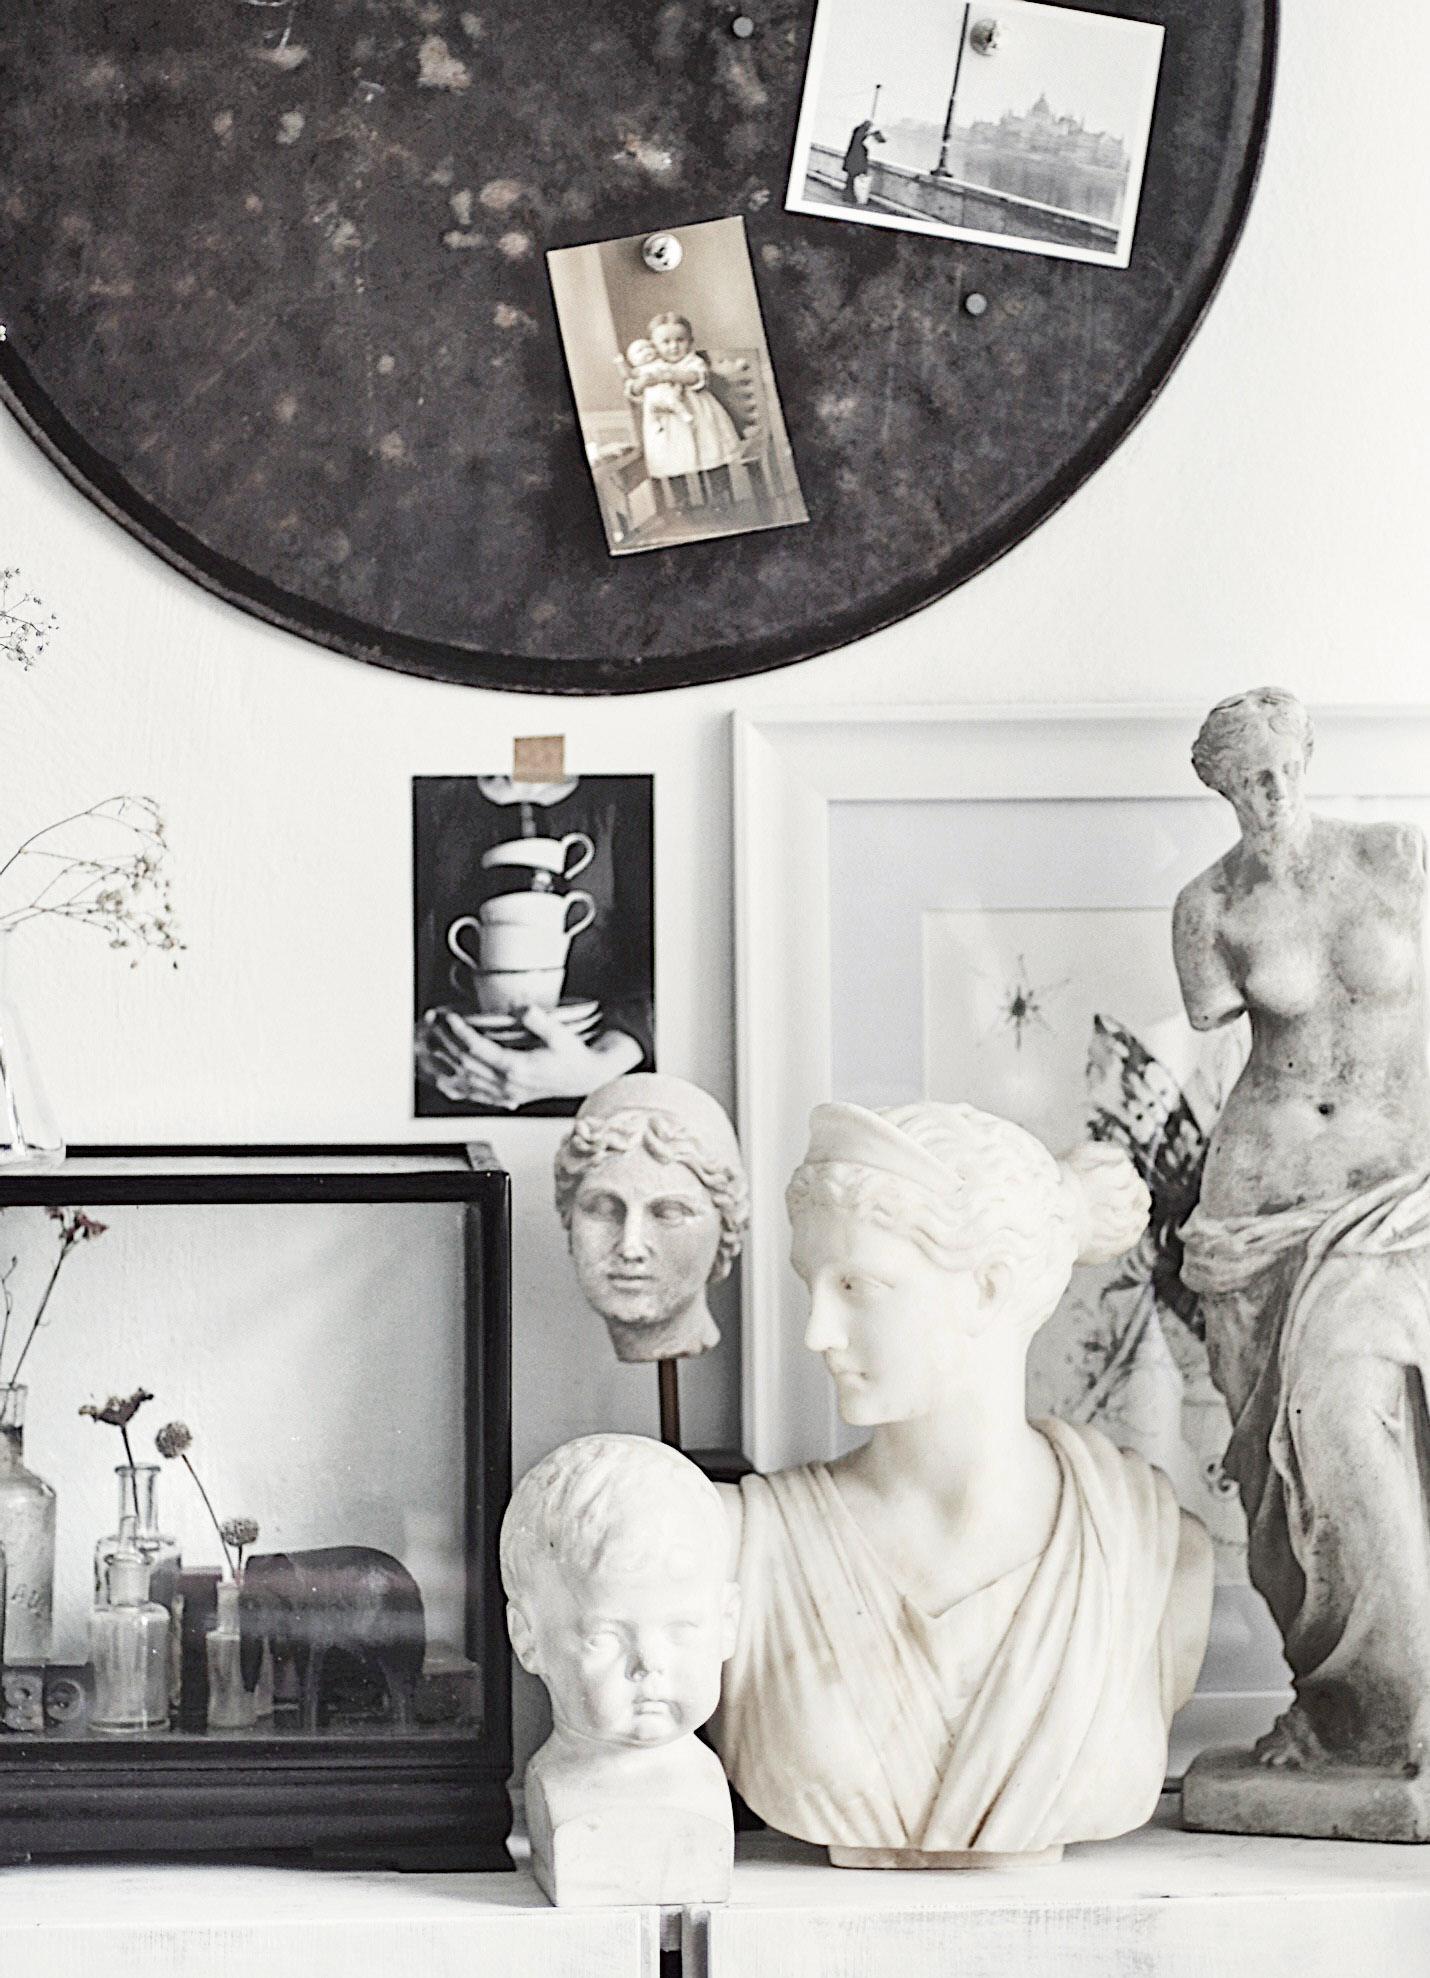  Mała kolekcja rzeźb – część kupiona w sieci, część odziedziczona po babci. (Fot. Margot Hupert)